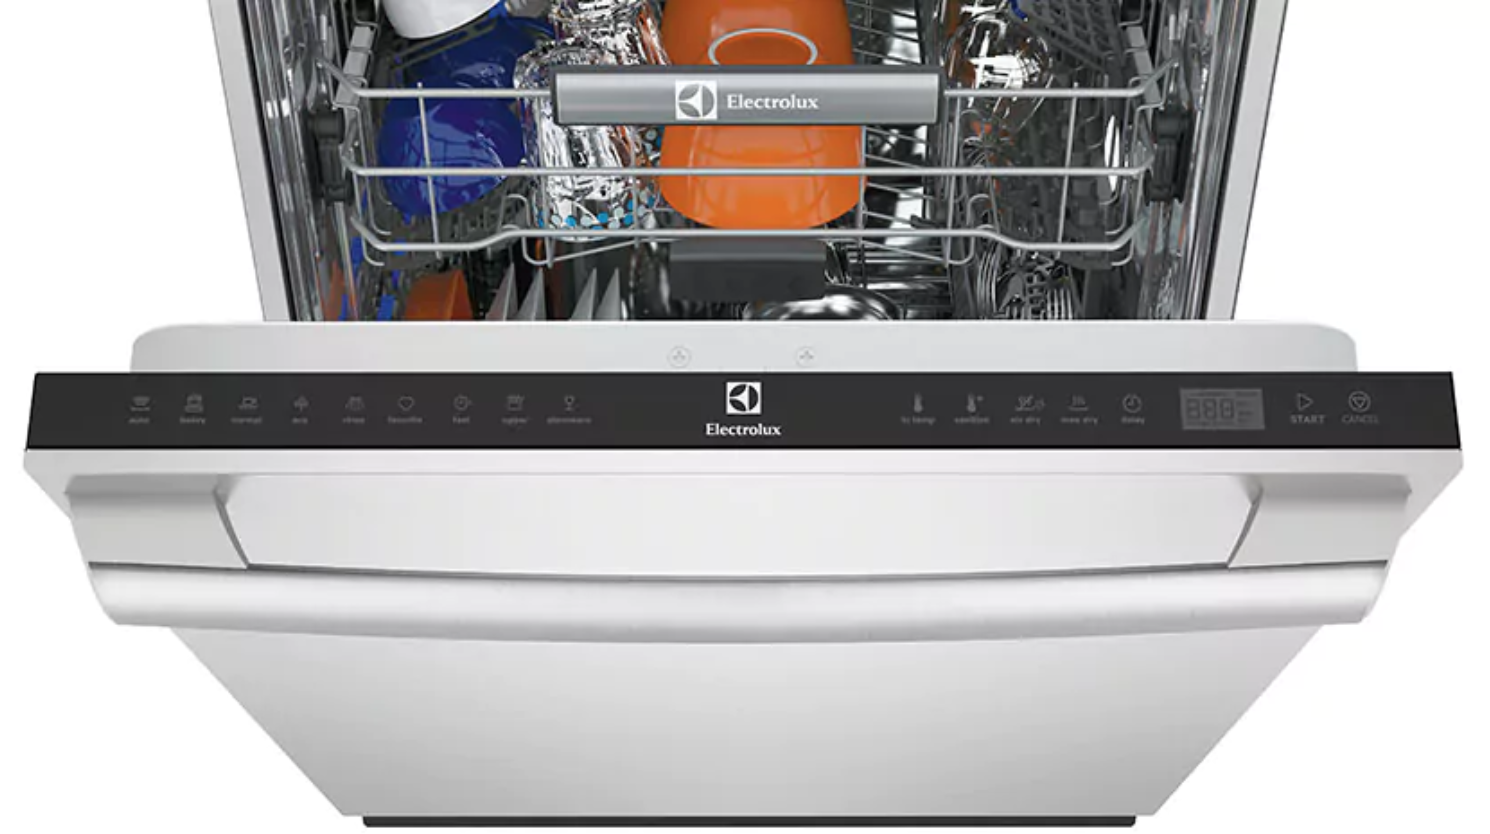 Electrolux Dishwashers Cleaning Appliances Arizona Wholesale